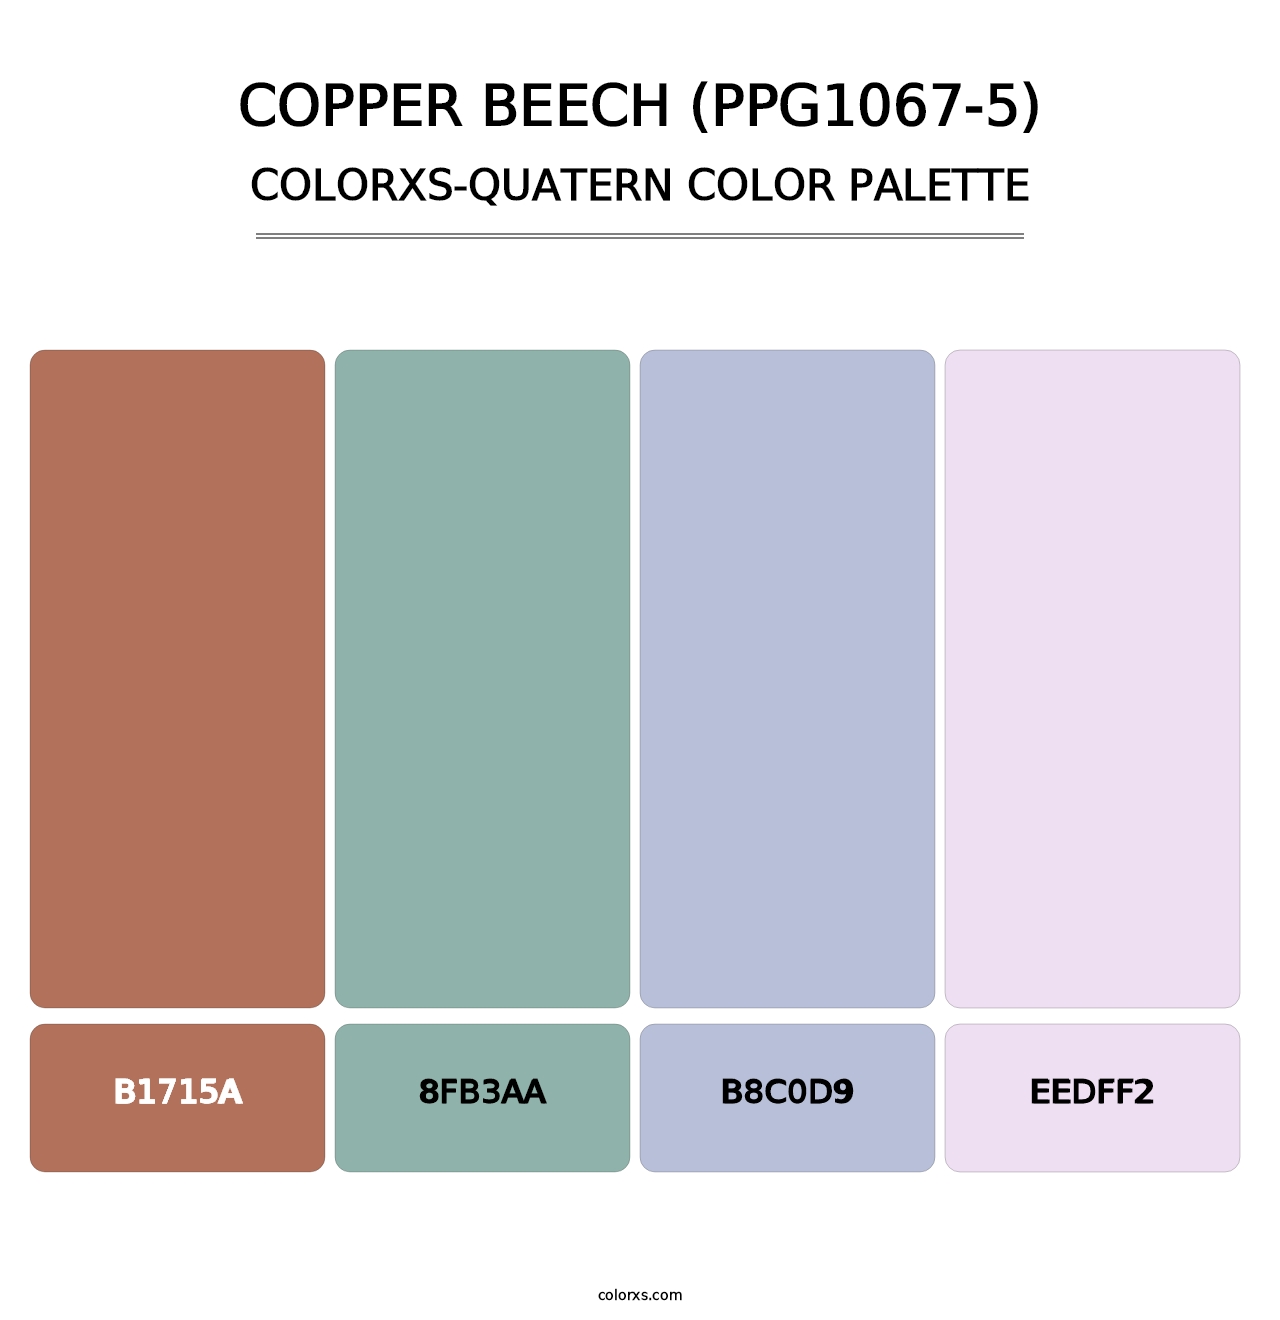 Copper Beech (PPG1067-5) - Colorxs Quatern Palette